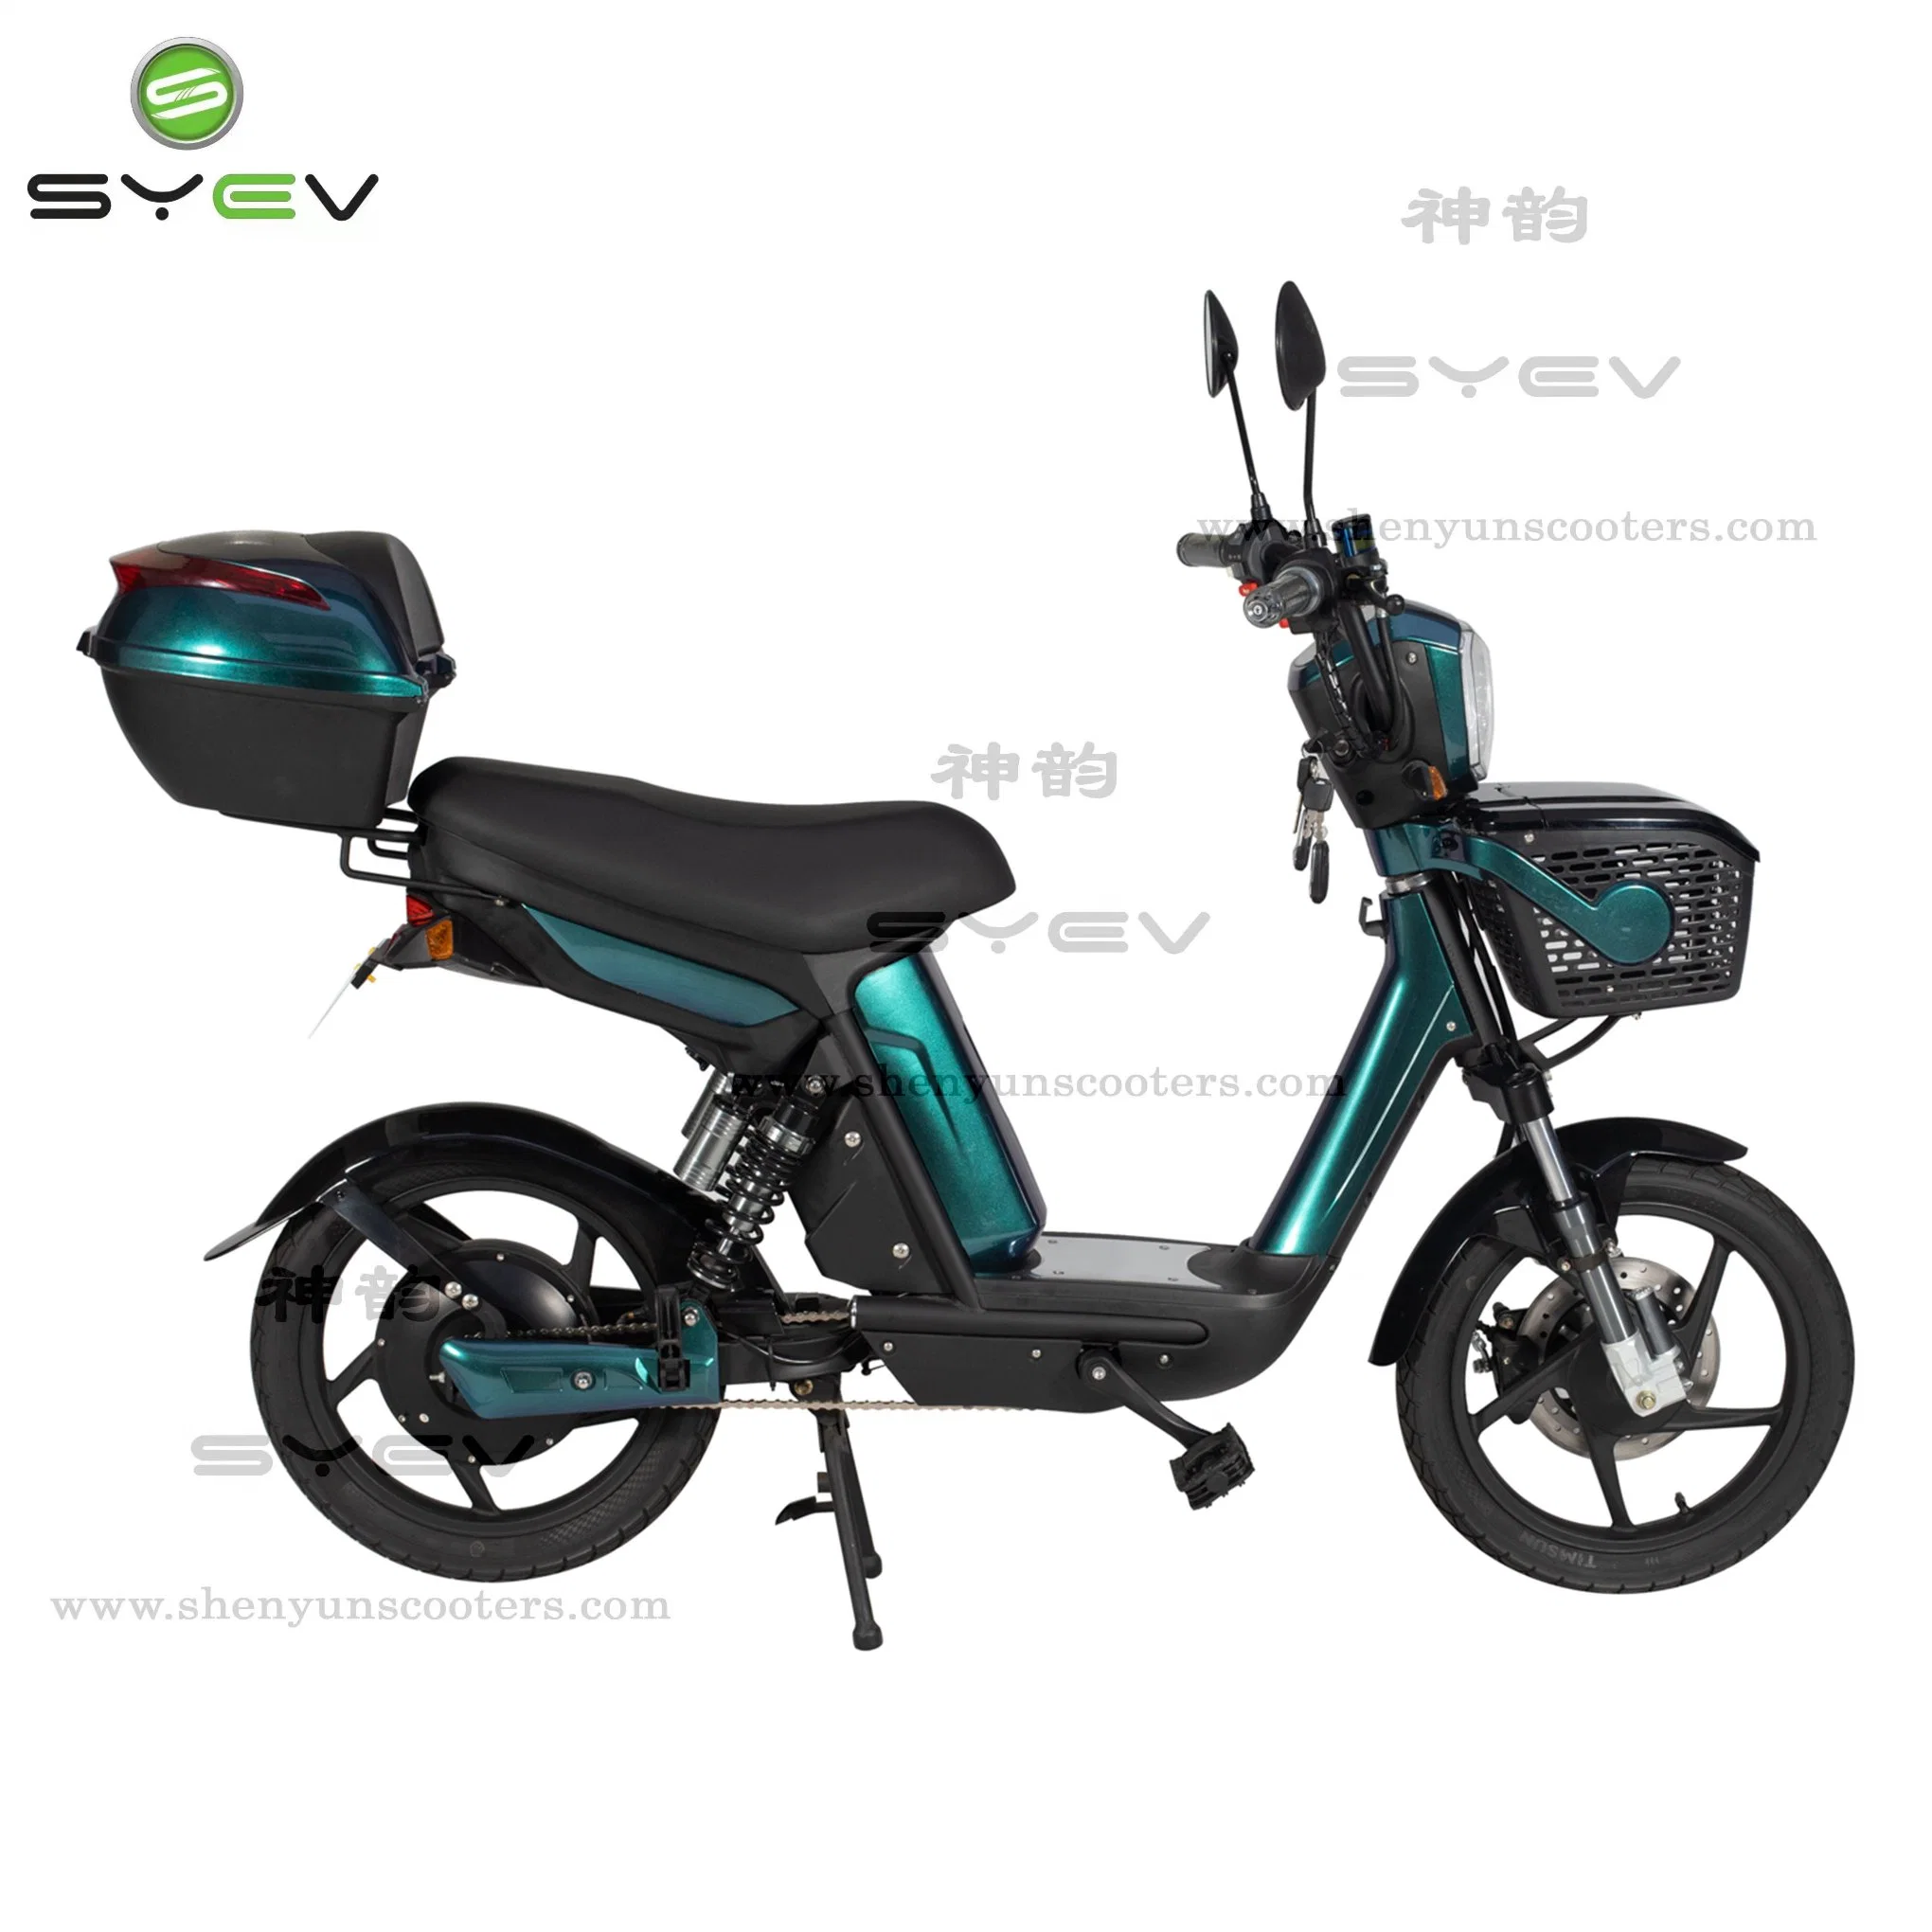 Meilleure sécurité Syev 500W adulte vélo électrique avec certificat ce cher vélo électrique 30-40 km de portée Scooter 35km/h